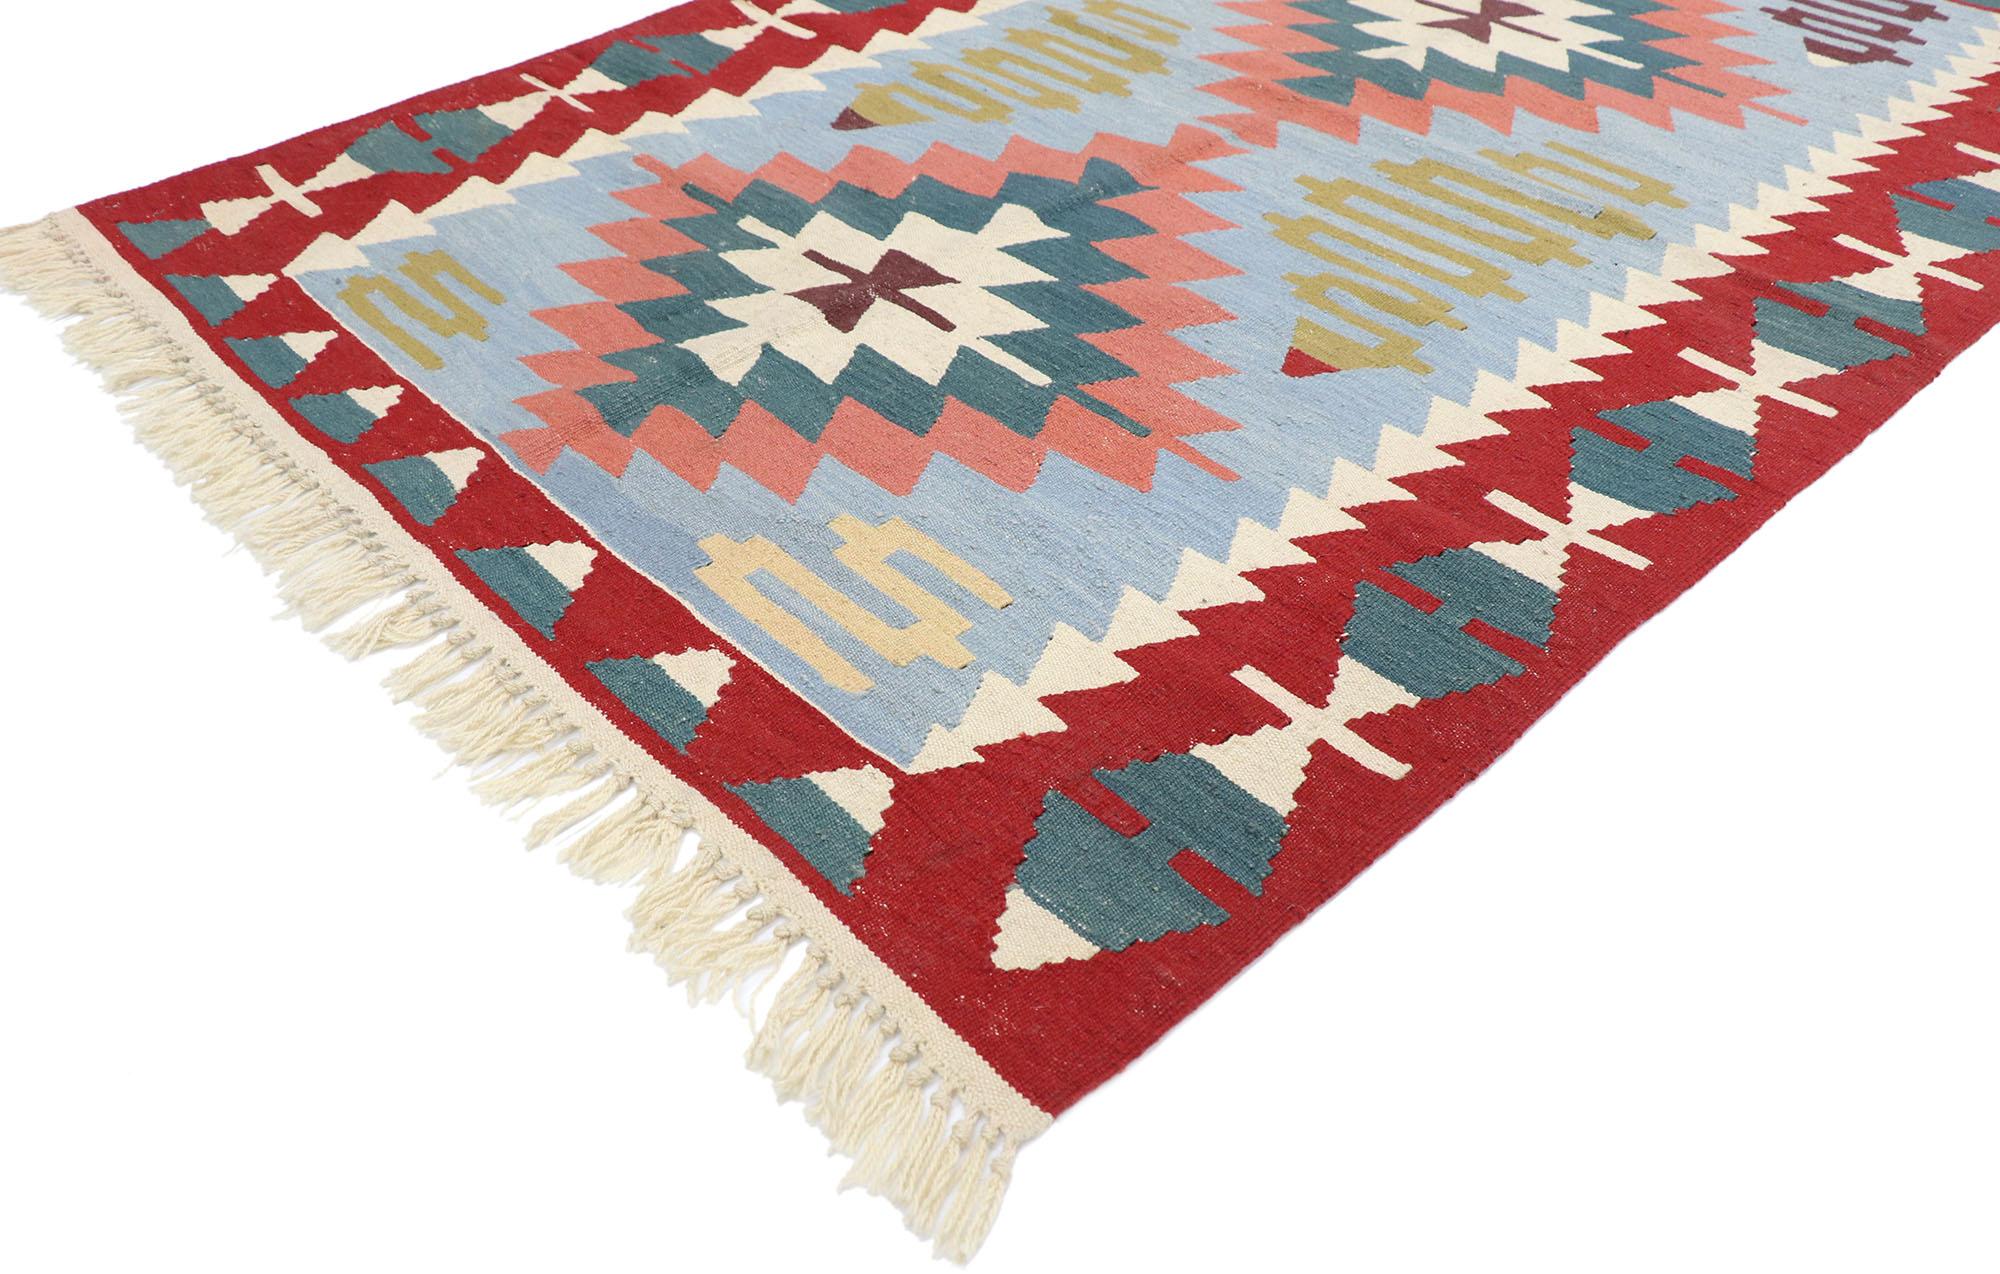 77807 Vieux tapis Persan Shiraz Kilim avec style Bohème Tribal 04'00 x 05'10. Plein de petits détails et un design expressif audacieux combiné avec des couleurs vibrantes et un style tribal, ce tapis kilim persan vintage en laine tissé à la main est